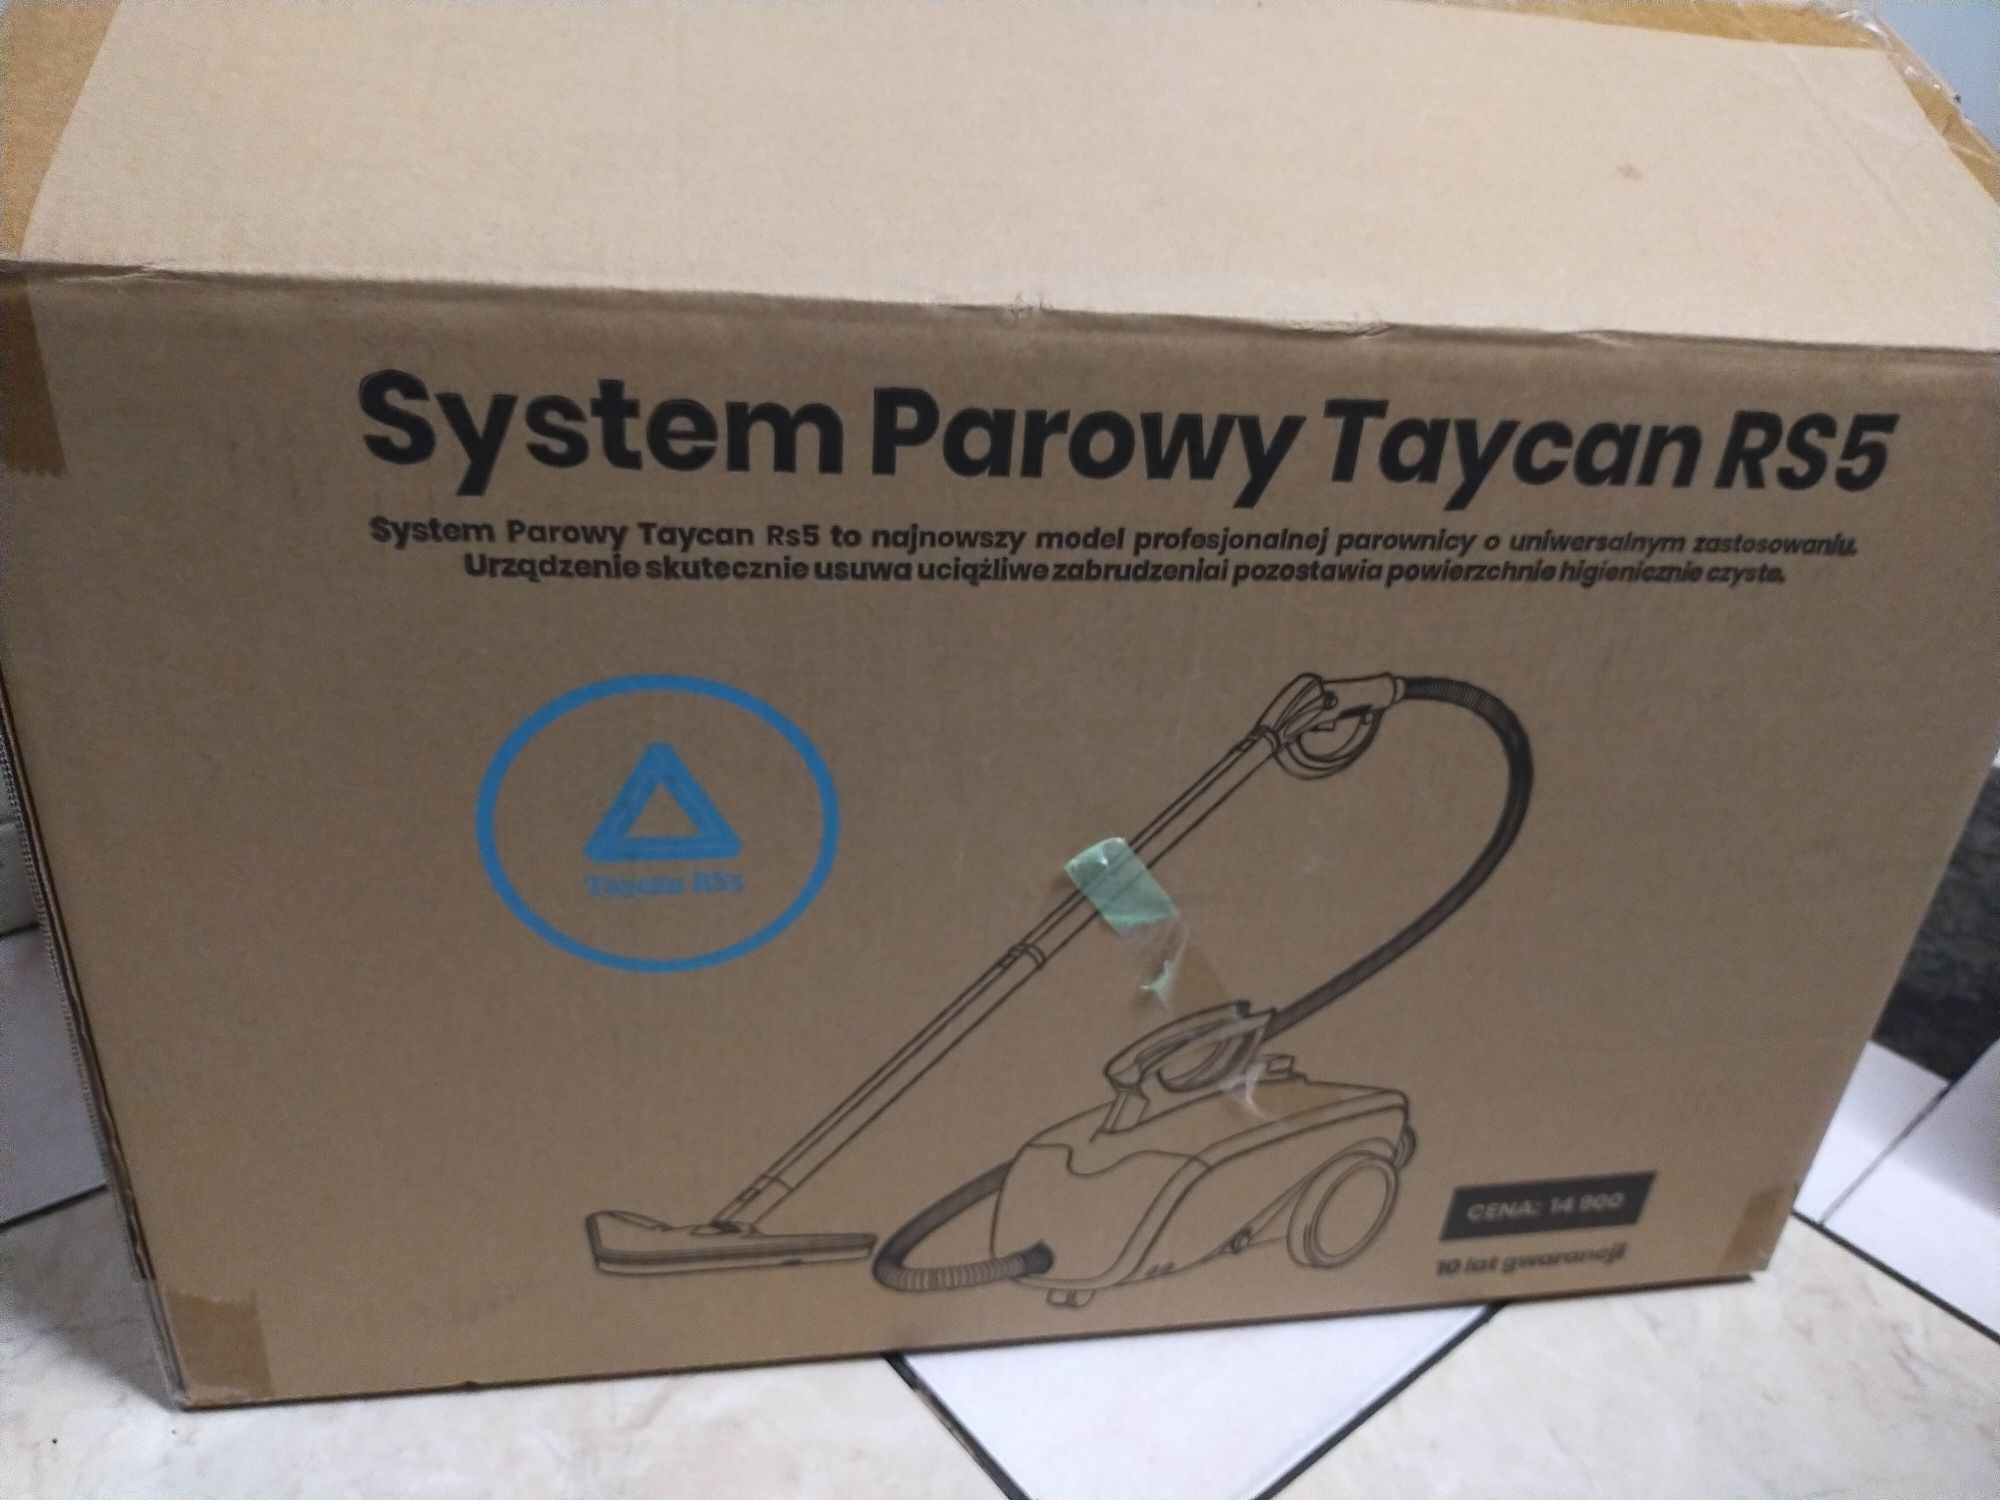 Profesjonalny system parowy 
TAYCAN RS5